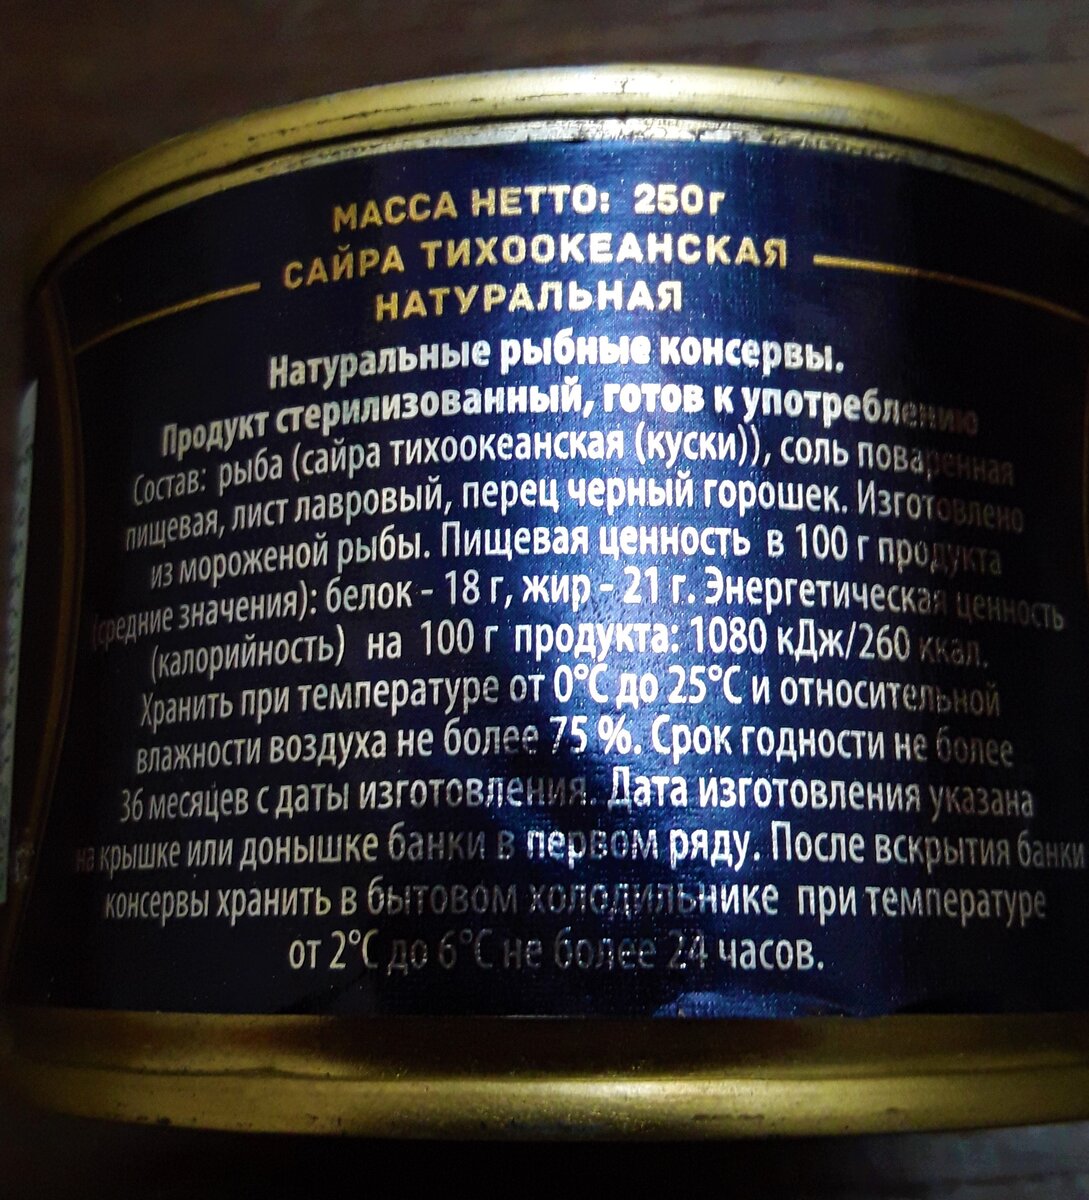 Купила в Пятерочке сайру из Владивостока изготовленную по ГОСТу за 89 руб. 99 коп., показываю, что за содержимое внутри…